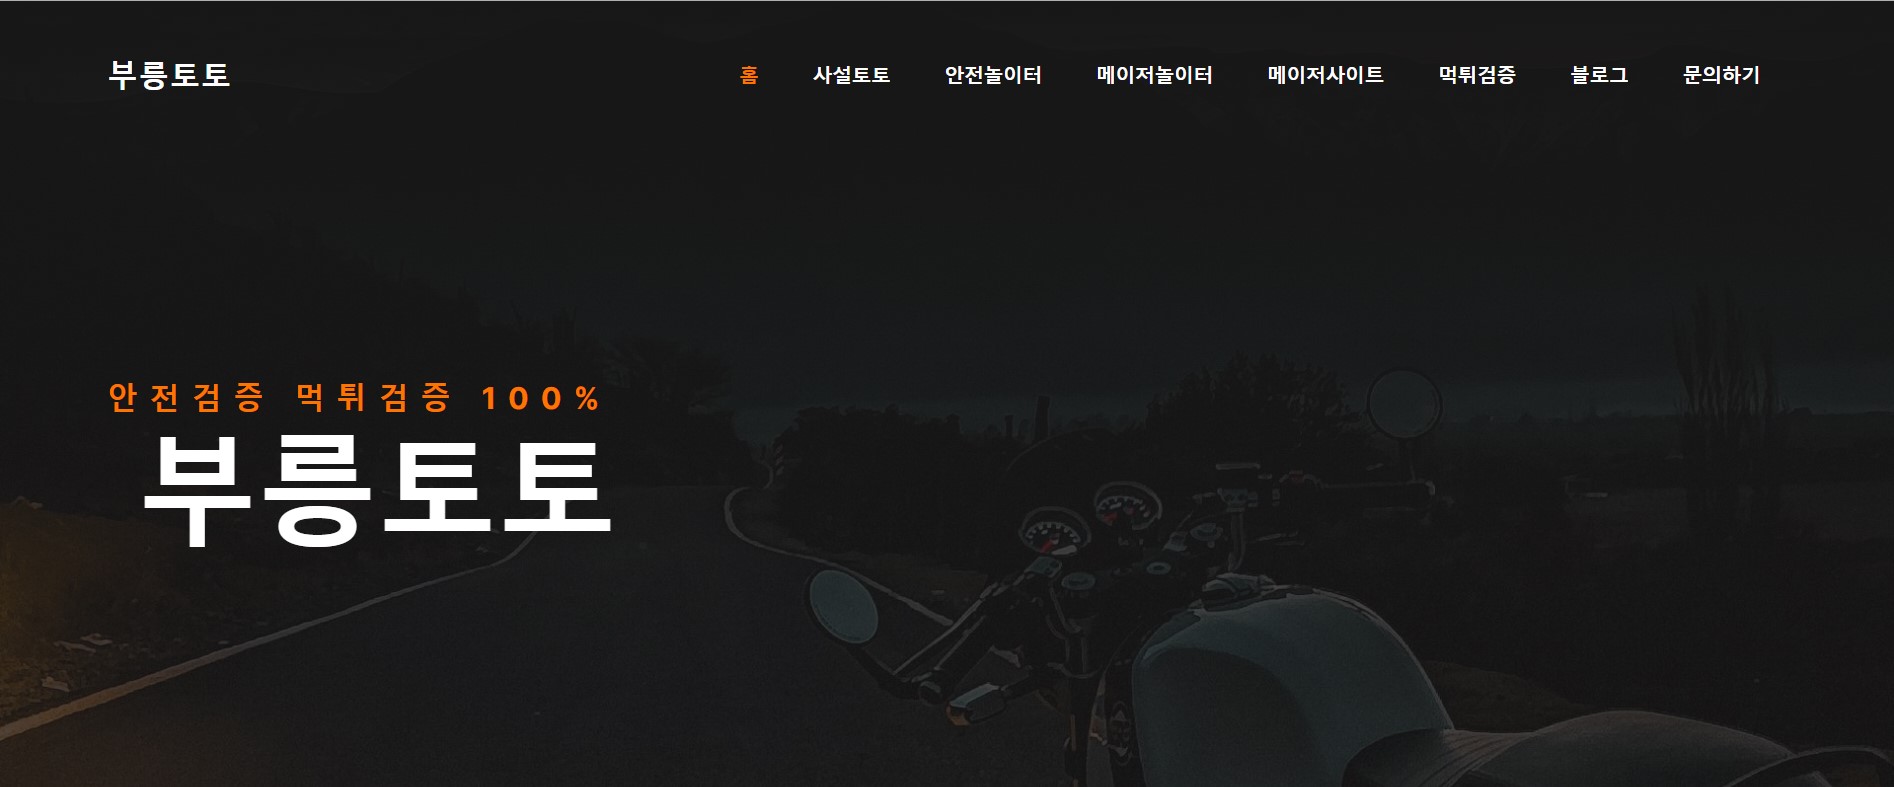 한국의 온라인 스포츠 베팅 유형